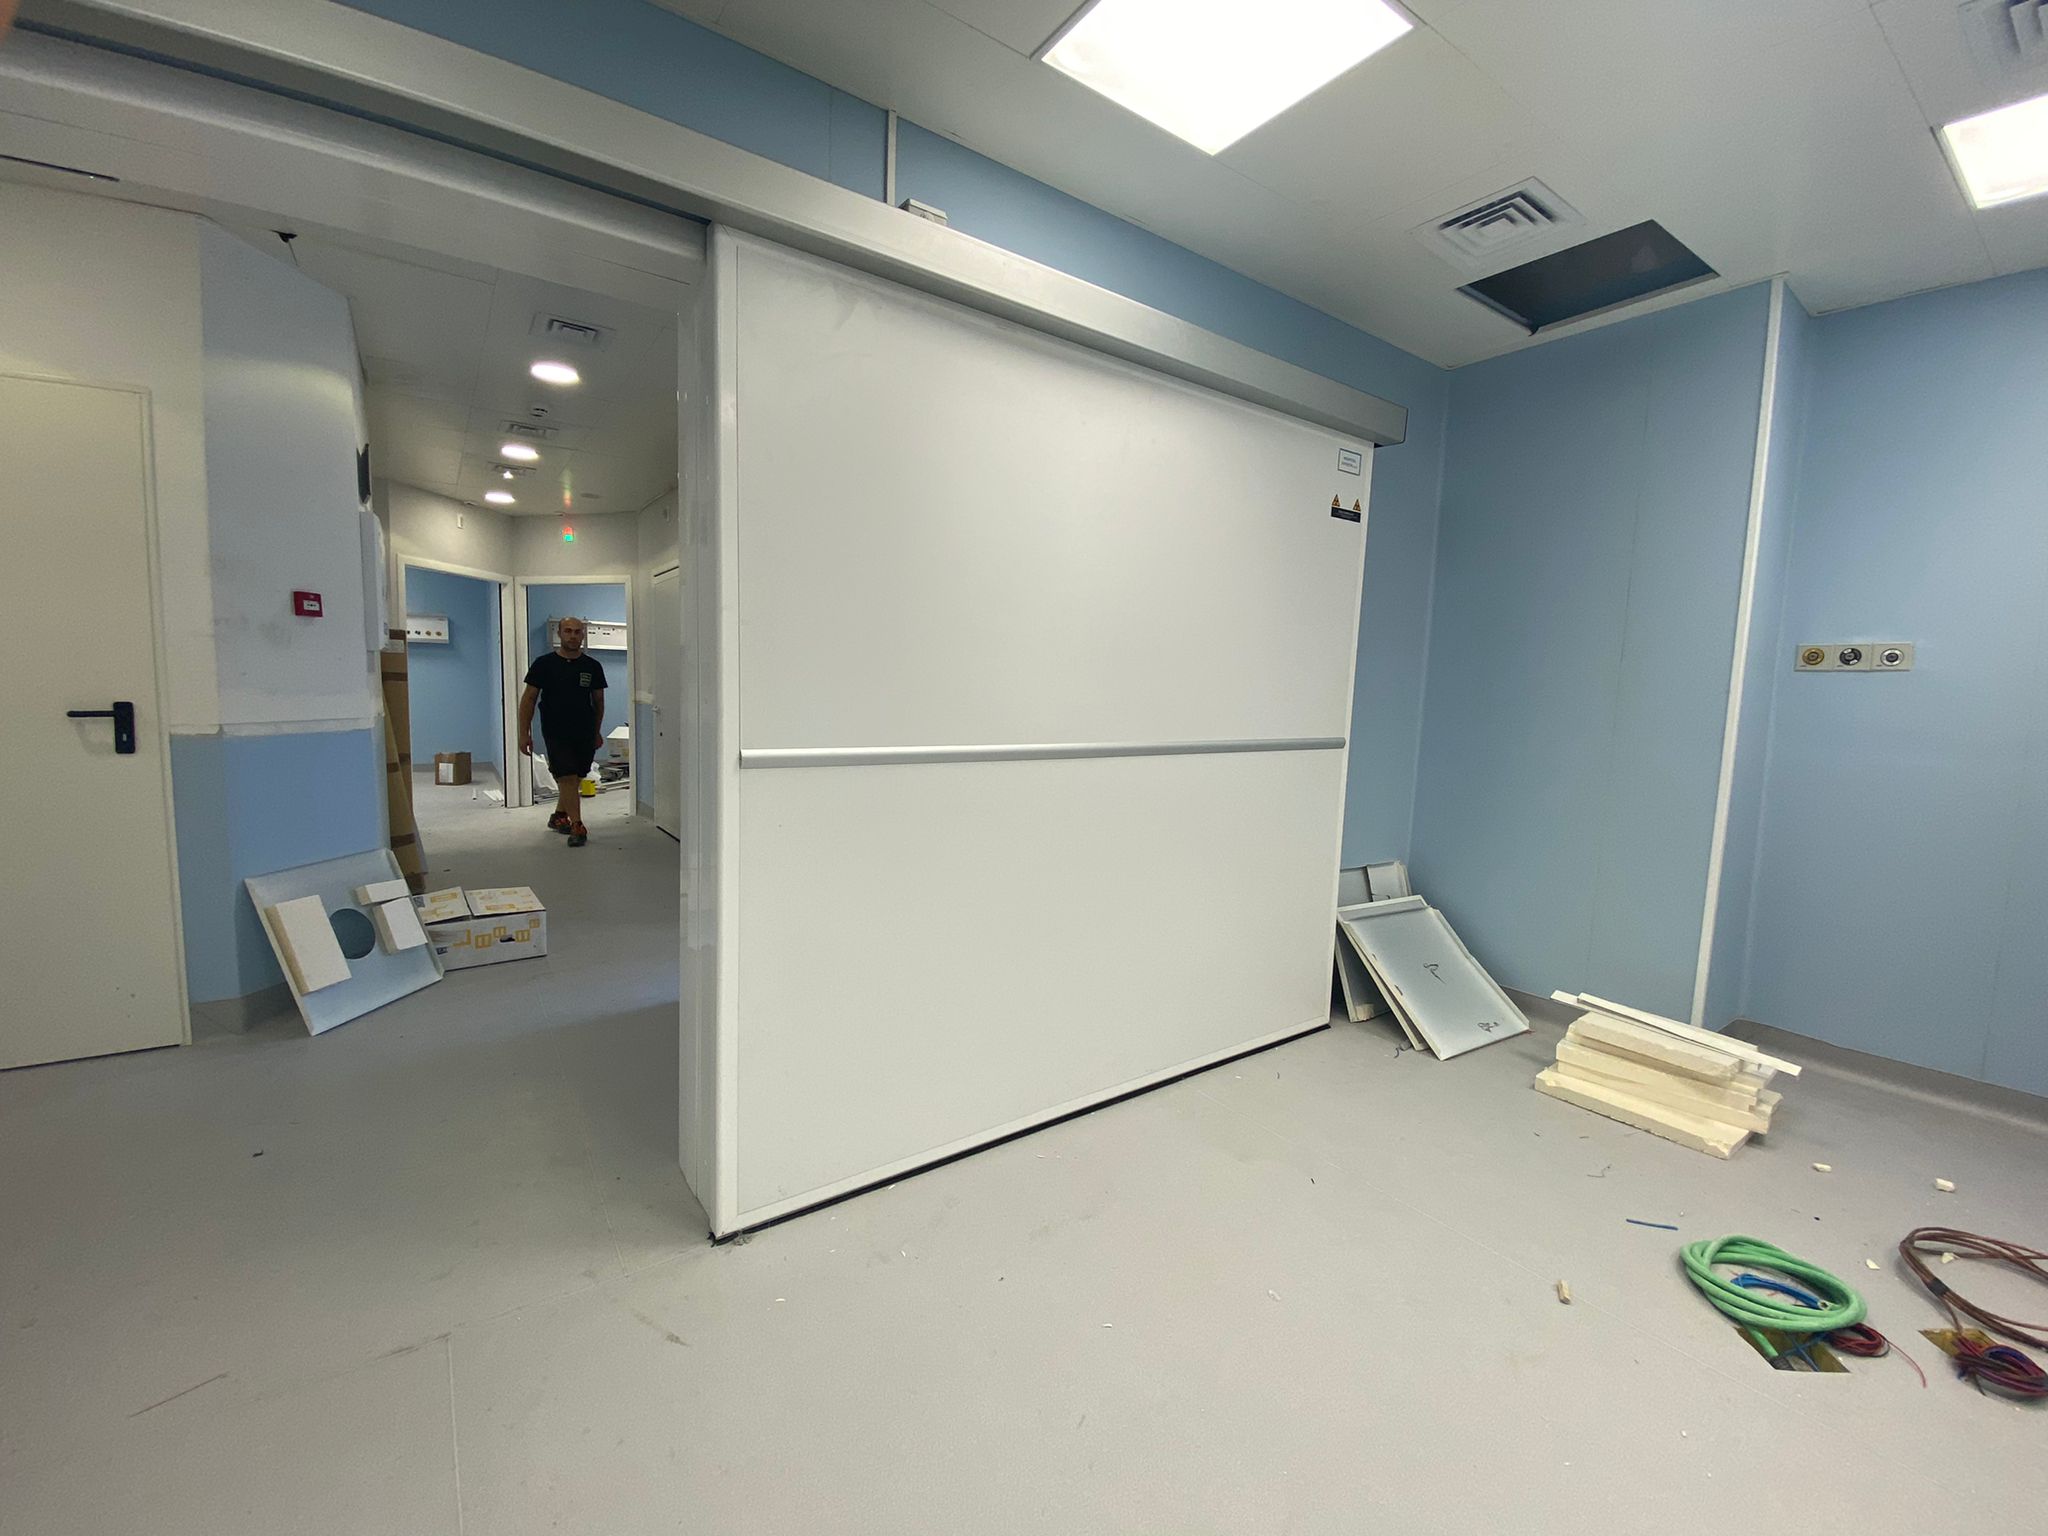 Porte per terapia intensiva - pronto soccorso  - Ospedale "Vittorio Emanuele" di Gela